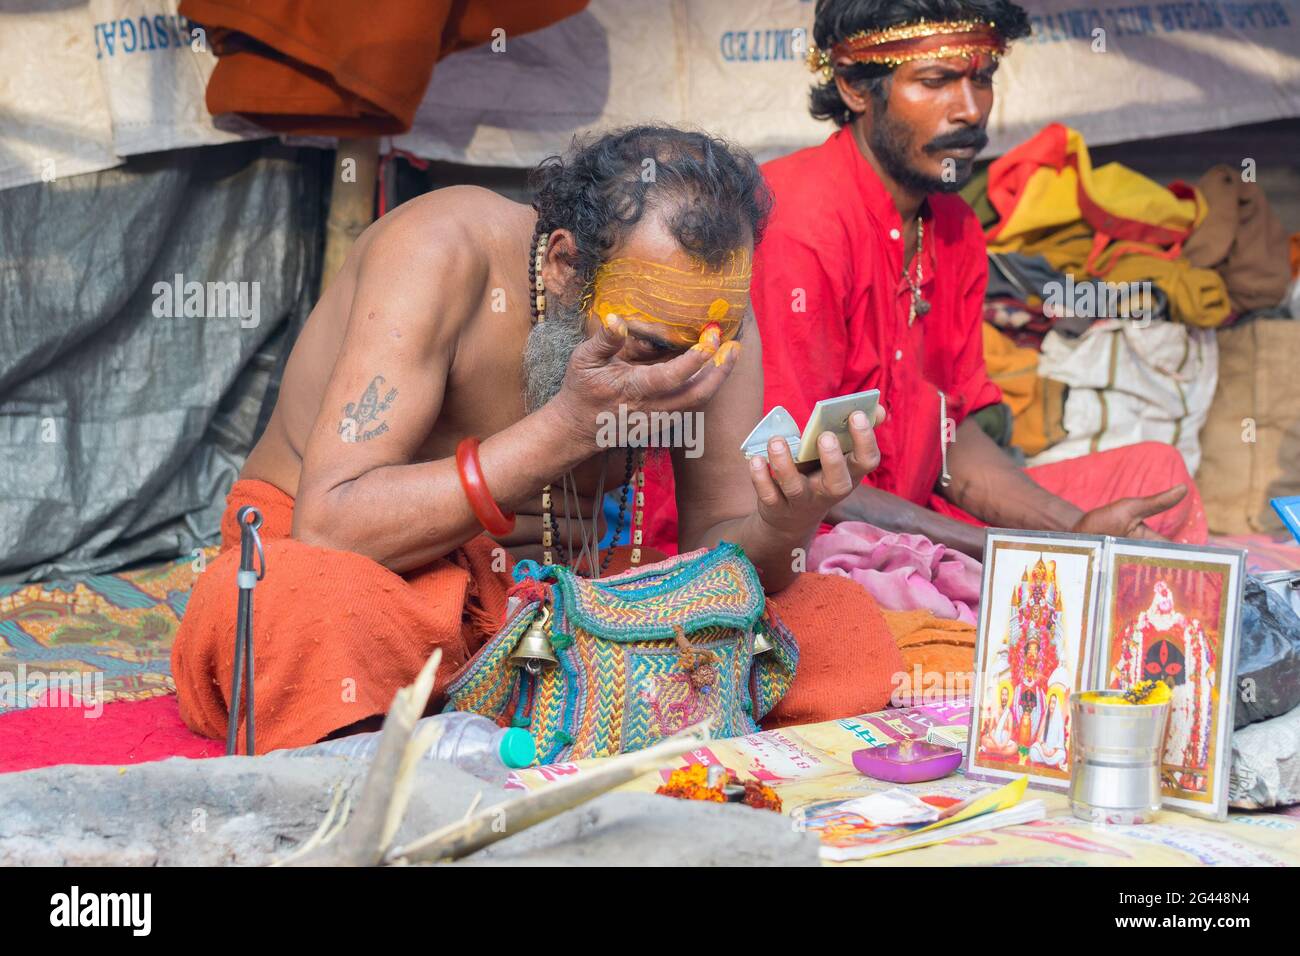 BABUGHAT, KOLKATA, BENGALE-OCCIDENTAL / INDE - 10 JANVIER 2015 : Hindu Sadhu qui fait la part belle aux rituels , portant le bindi, un gros point rouge sur le front. Banque D'Images